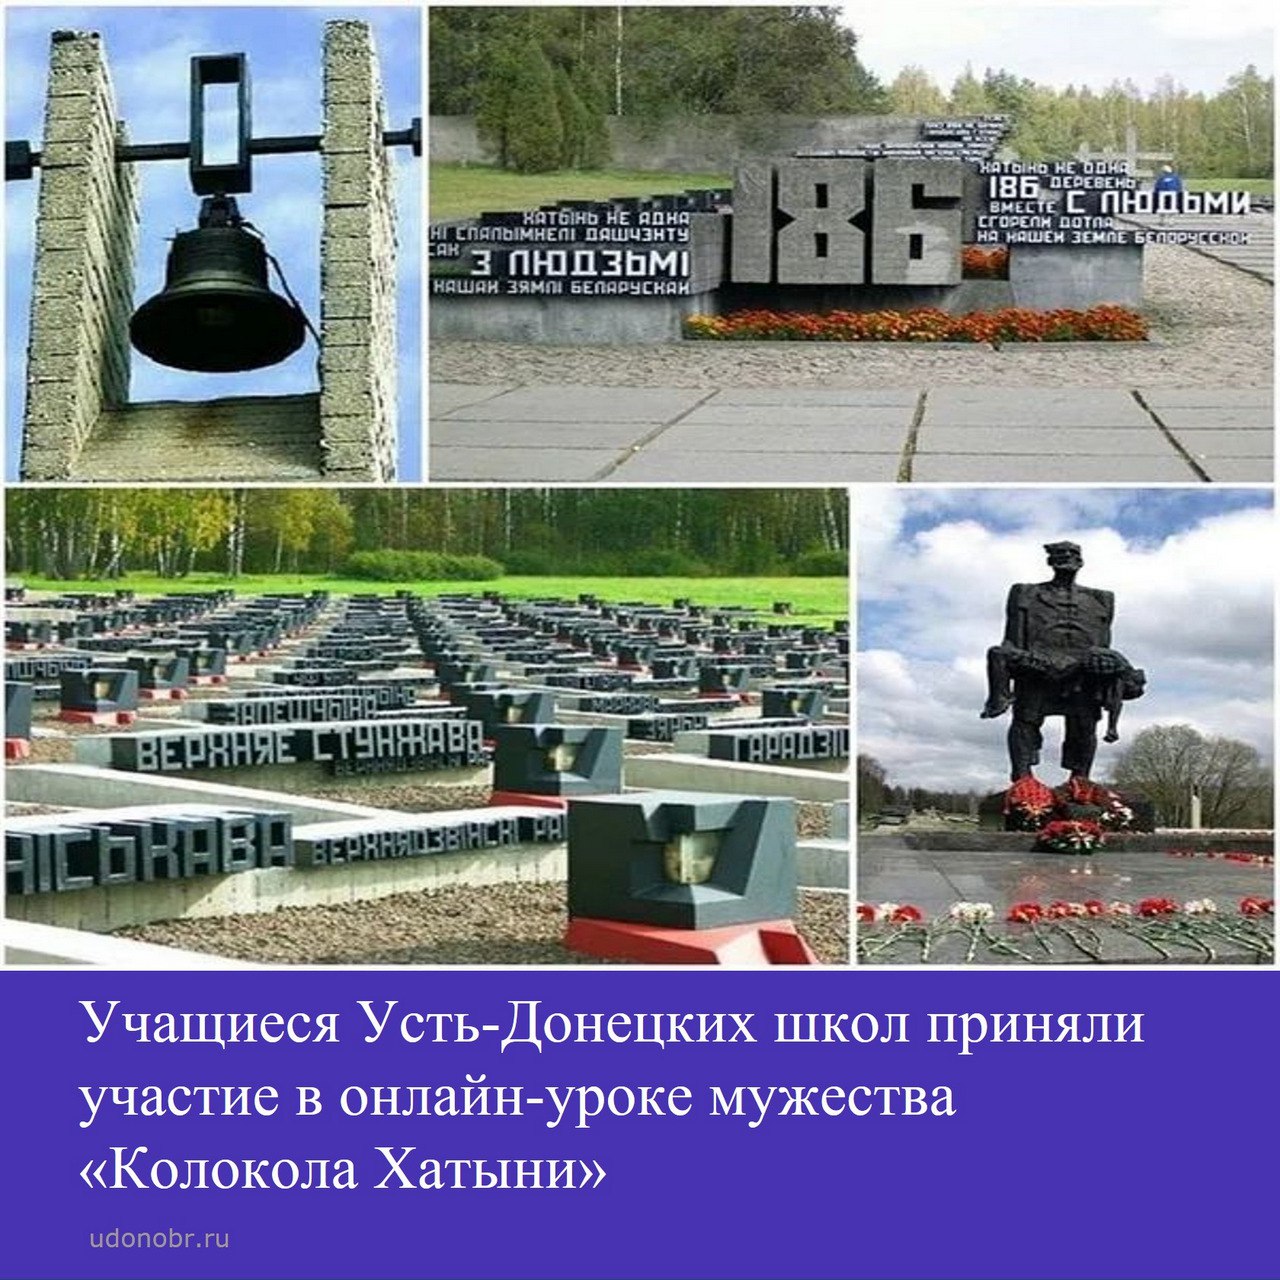 Учащиеся Усть-Донецких школ приняли участие в онлайн-уроке мужества «Колокола Хатыни»